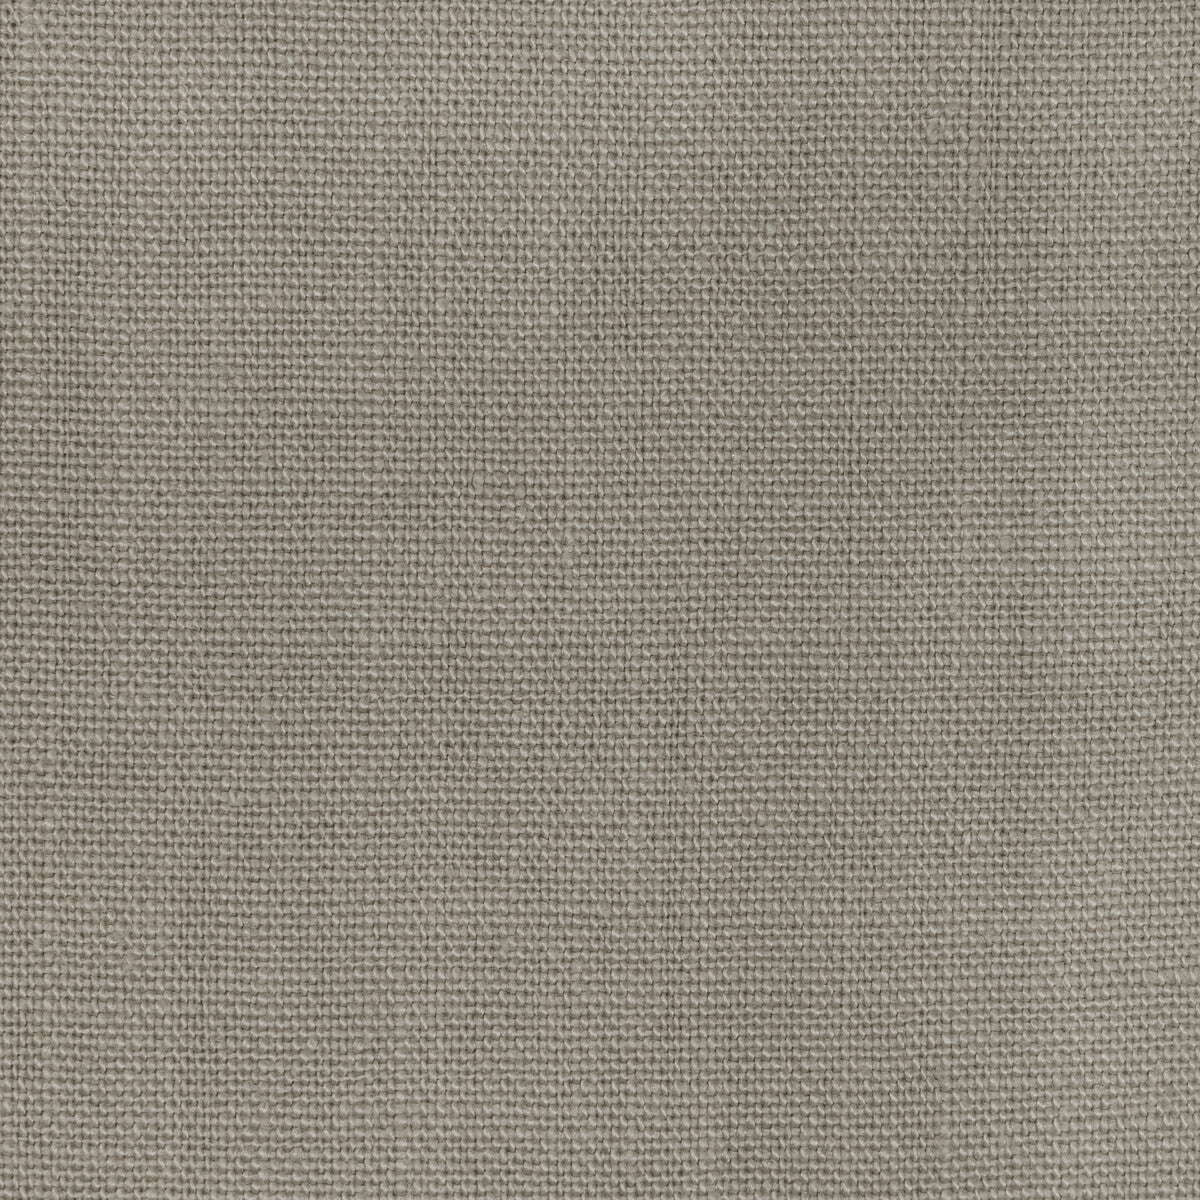 Kravet Basics fabric in 36332-21 color - pattern 36332.21.0 - by Kravet Basics